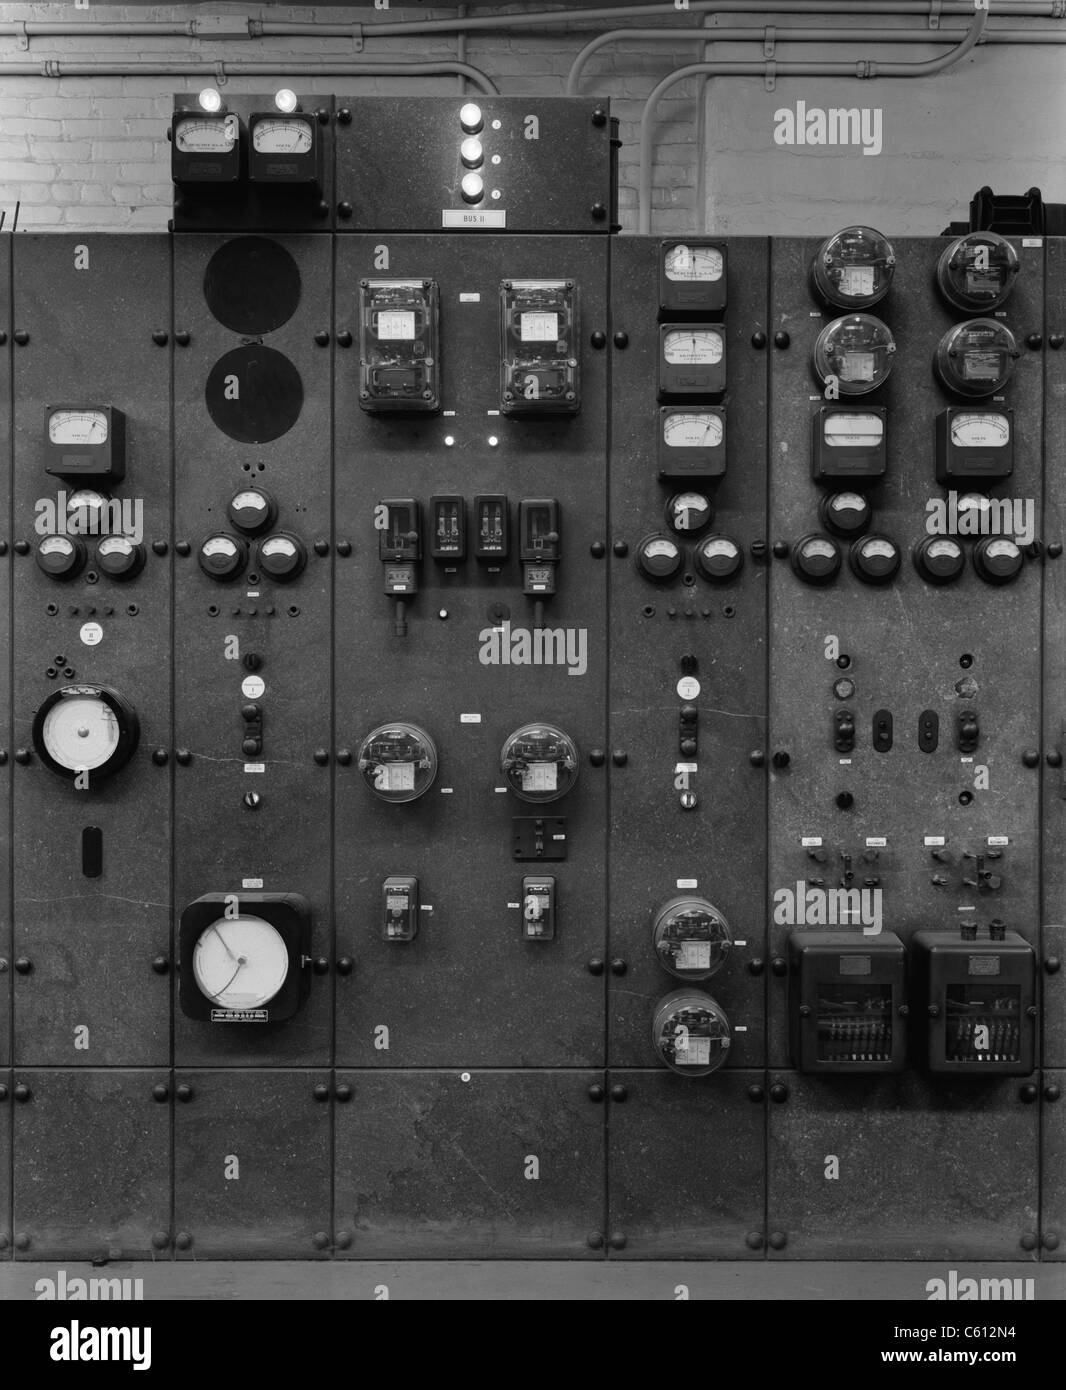 Control Panels der Detroit Edison Umspannwerk im frühen 20. Jahrhundert. Funktion der Station wurde Step-down (reduzieren) eingehenden Strom Hochspannung vor der Auslieferung an Kunden und konvertieren von Wechselstrom in Gleichstrom für Straßenbahnlinien. Ca. 1920. Stockfoto